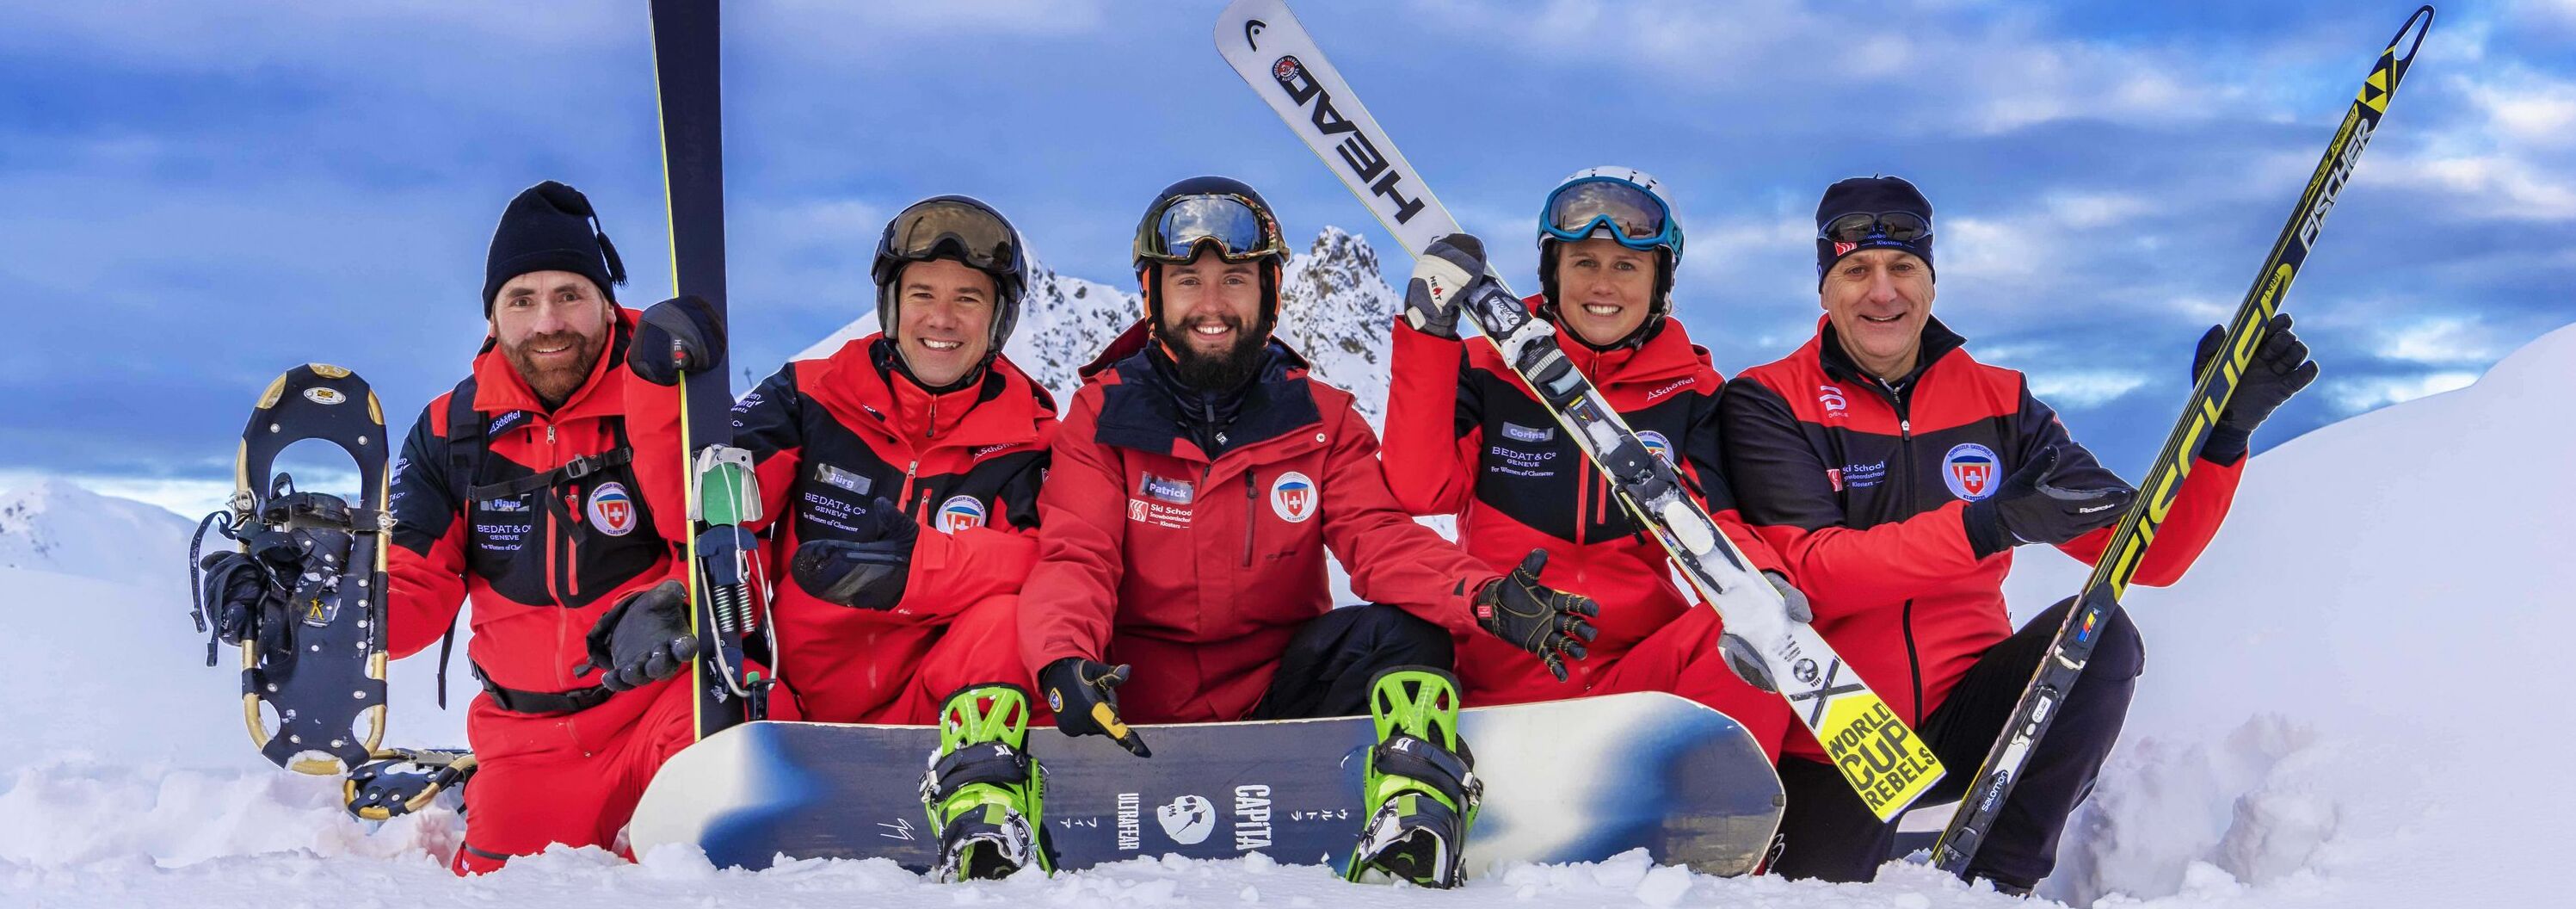 Team der Skischule Klosters posiert im Skigebiet 